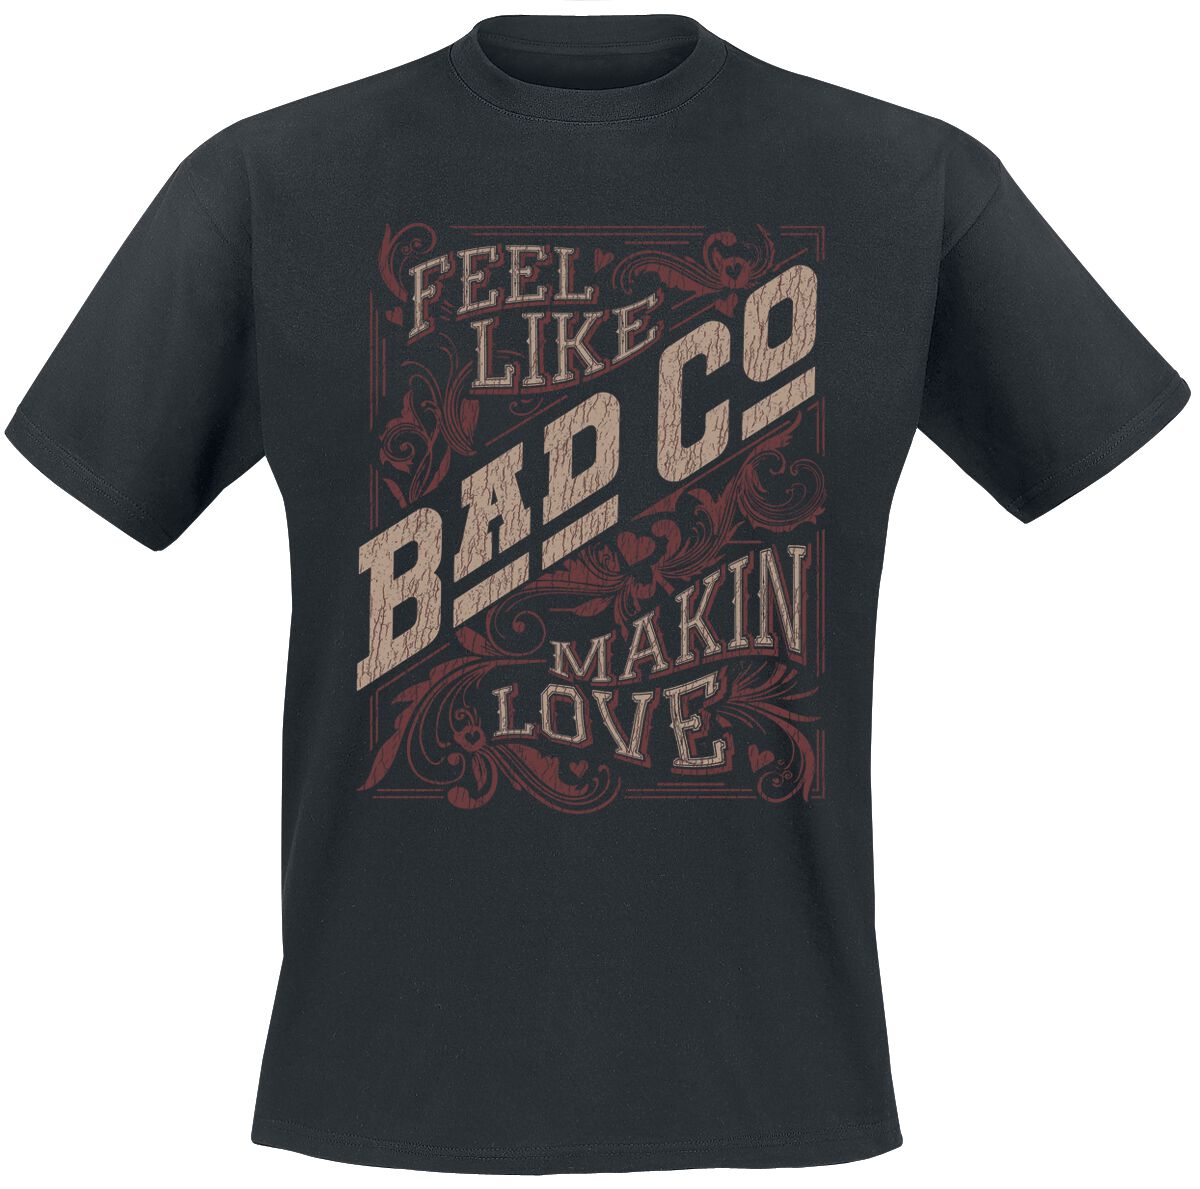 Bad Company T-Shirt - Makin Love - S bis XXL - für Männer - Größe XL - schwarz  - EMP exklusives Merchandise!